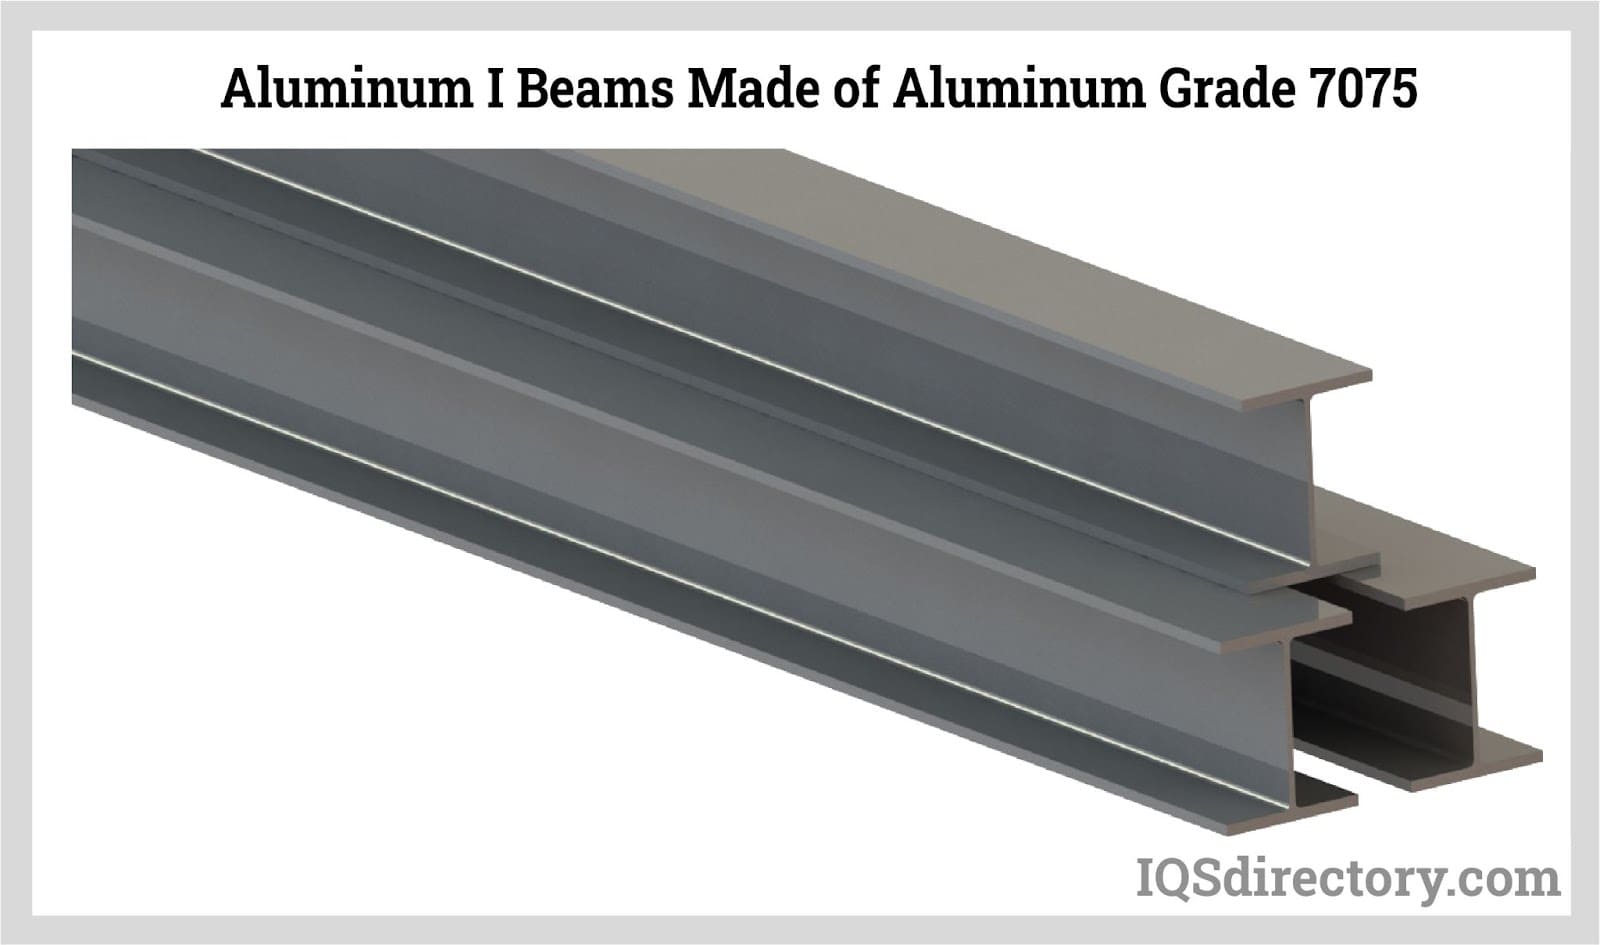 Aluminum I Beams Made of Aluminum Grade 7075